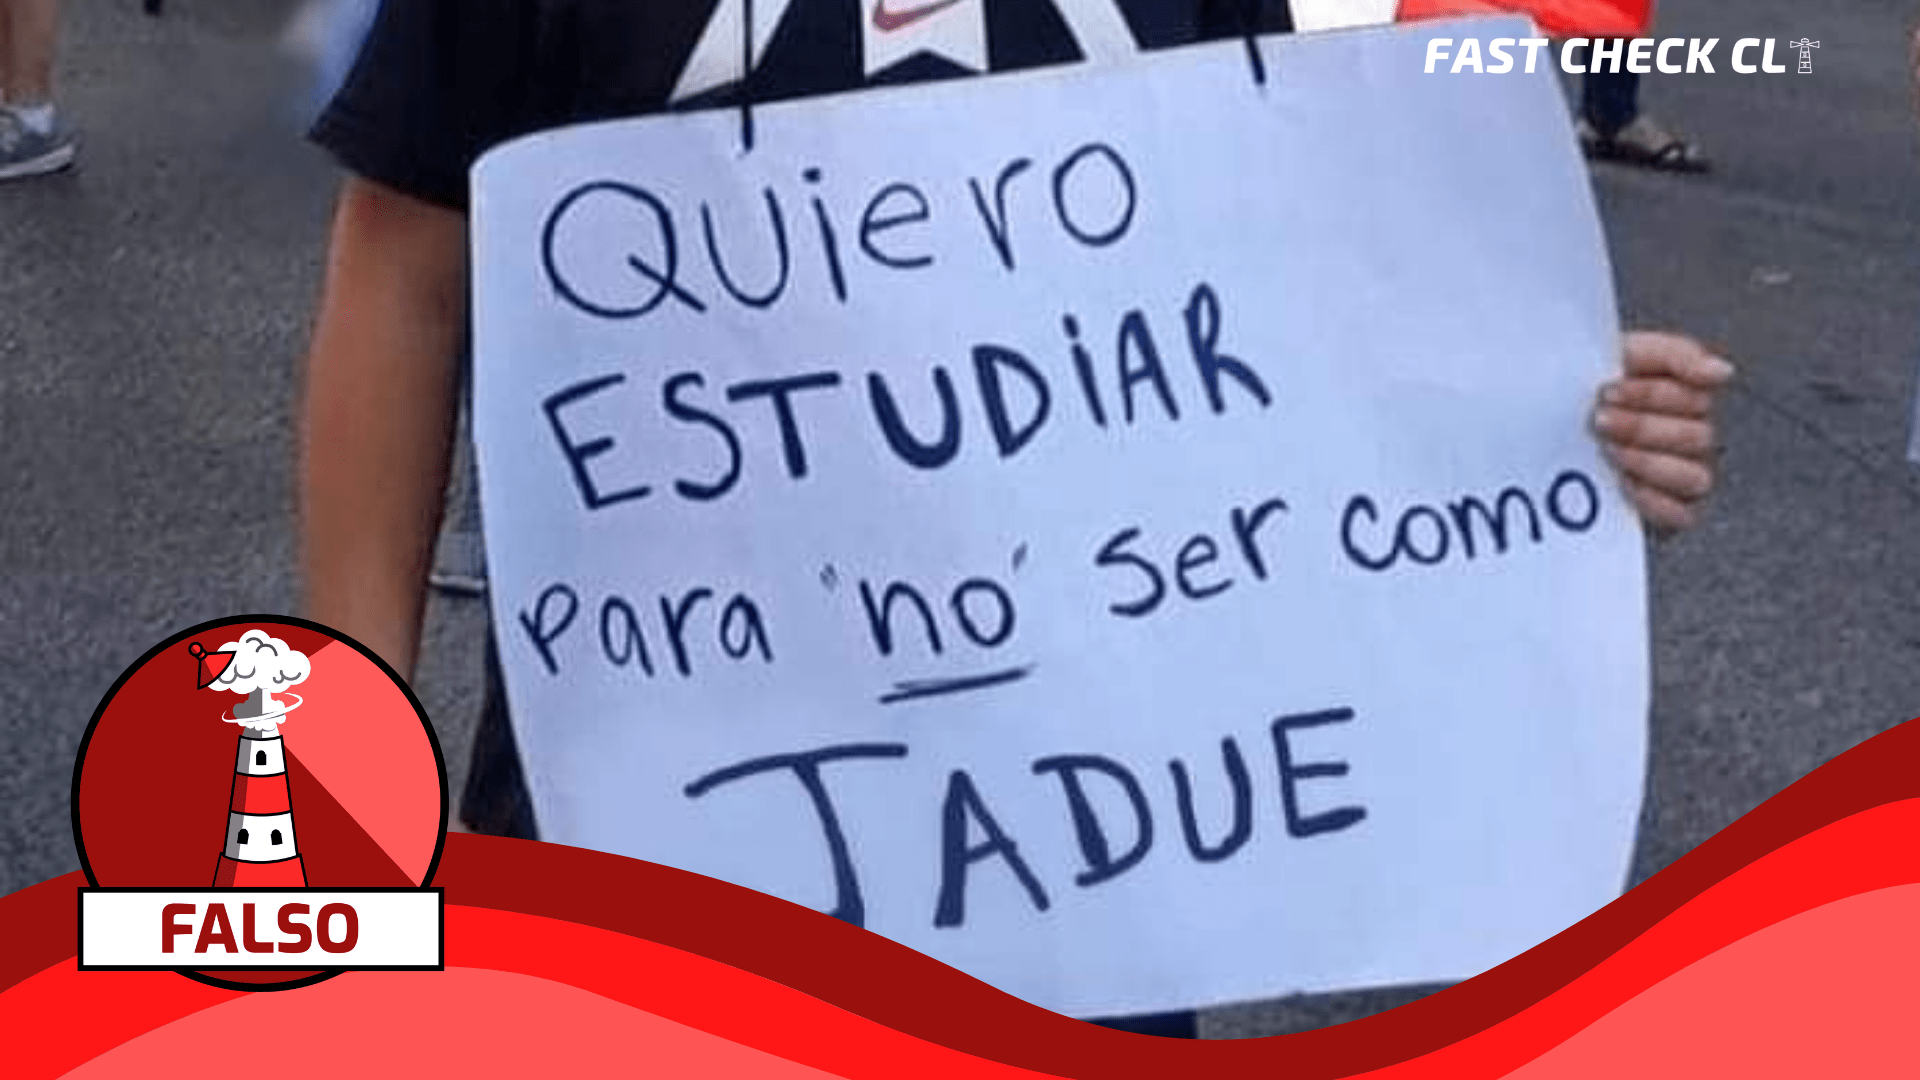 Read more about the article (Imagen) Niño con cartel: “Quiero estudiar para no ser como Jadue”: #Falso